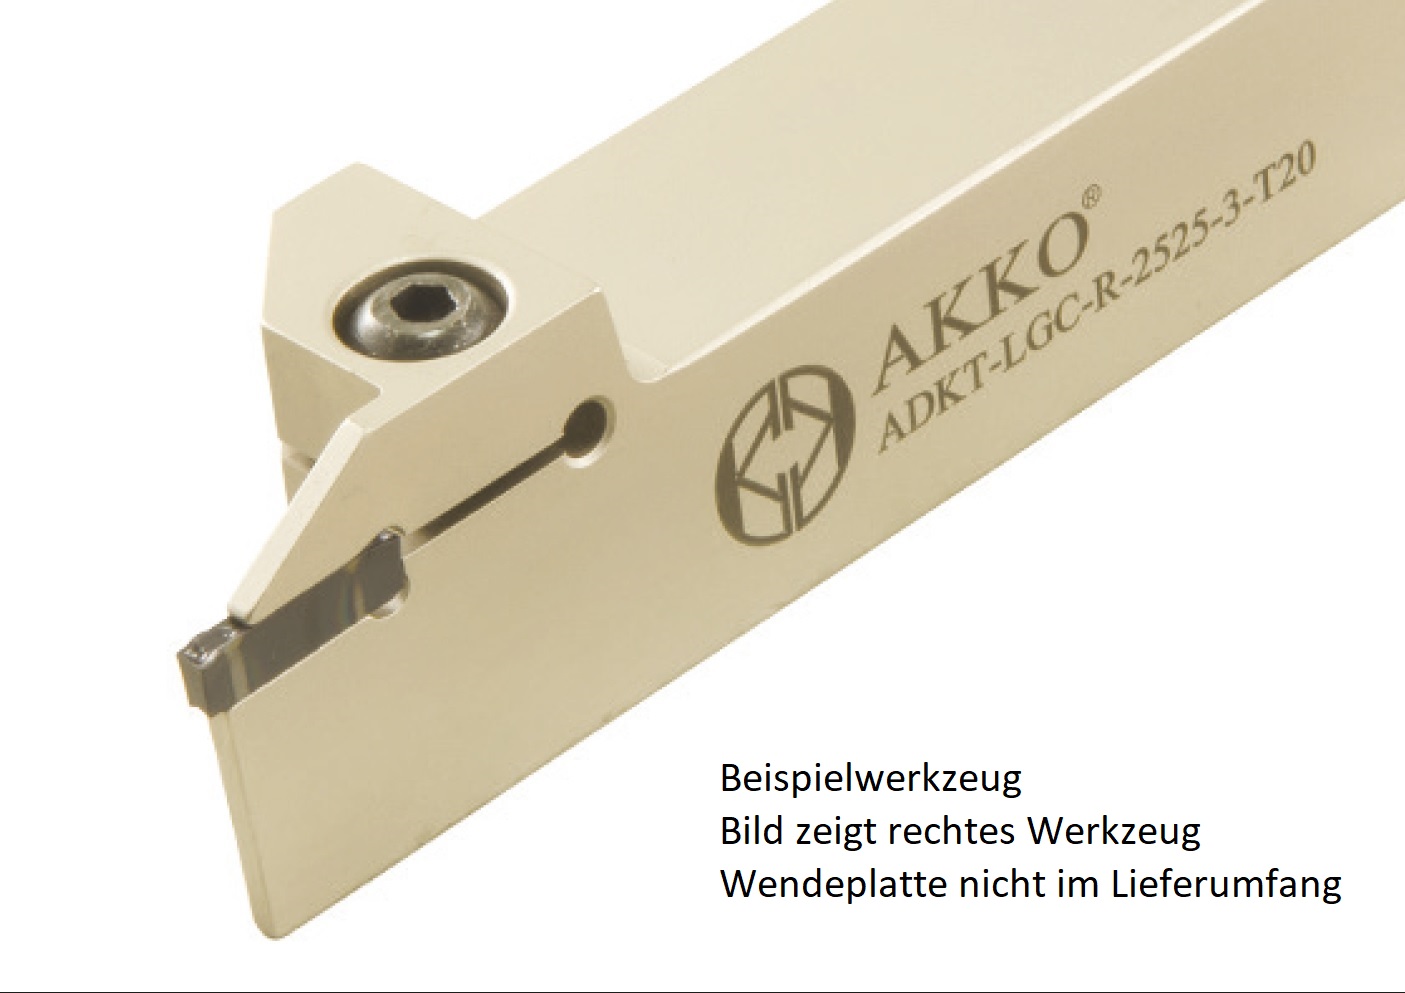 AKKO-Außen-Stechhalter, kompatibel mit Lamina-Stechplatte GCTX-3
links, Schaft 16 x 16 mm